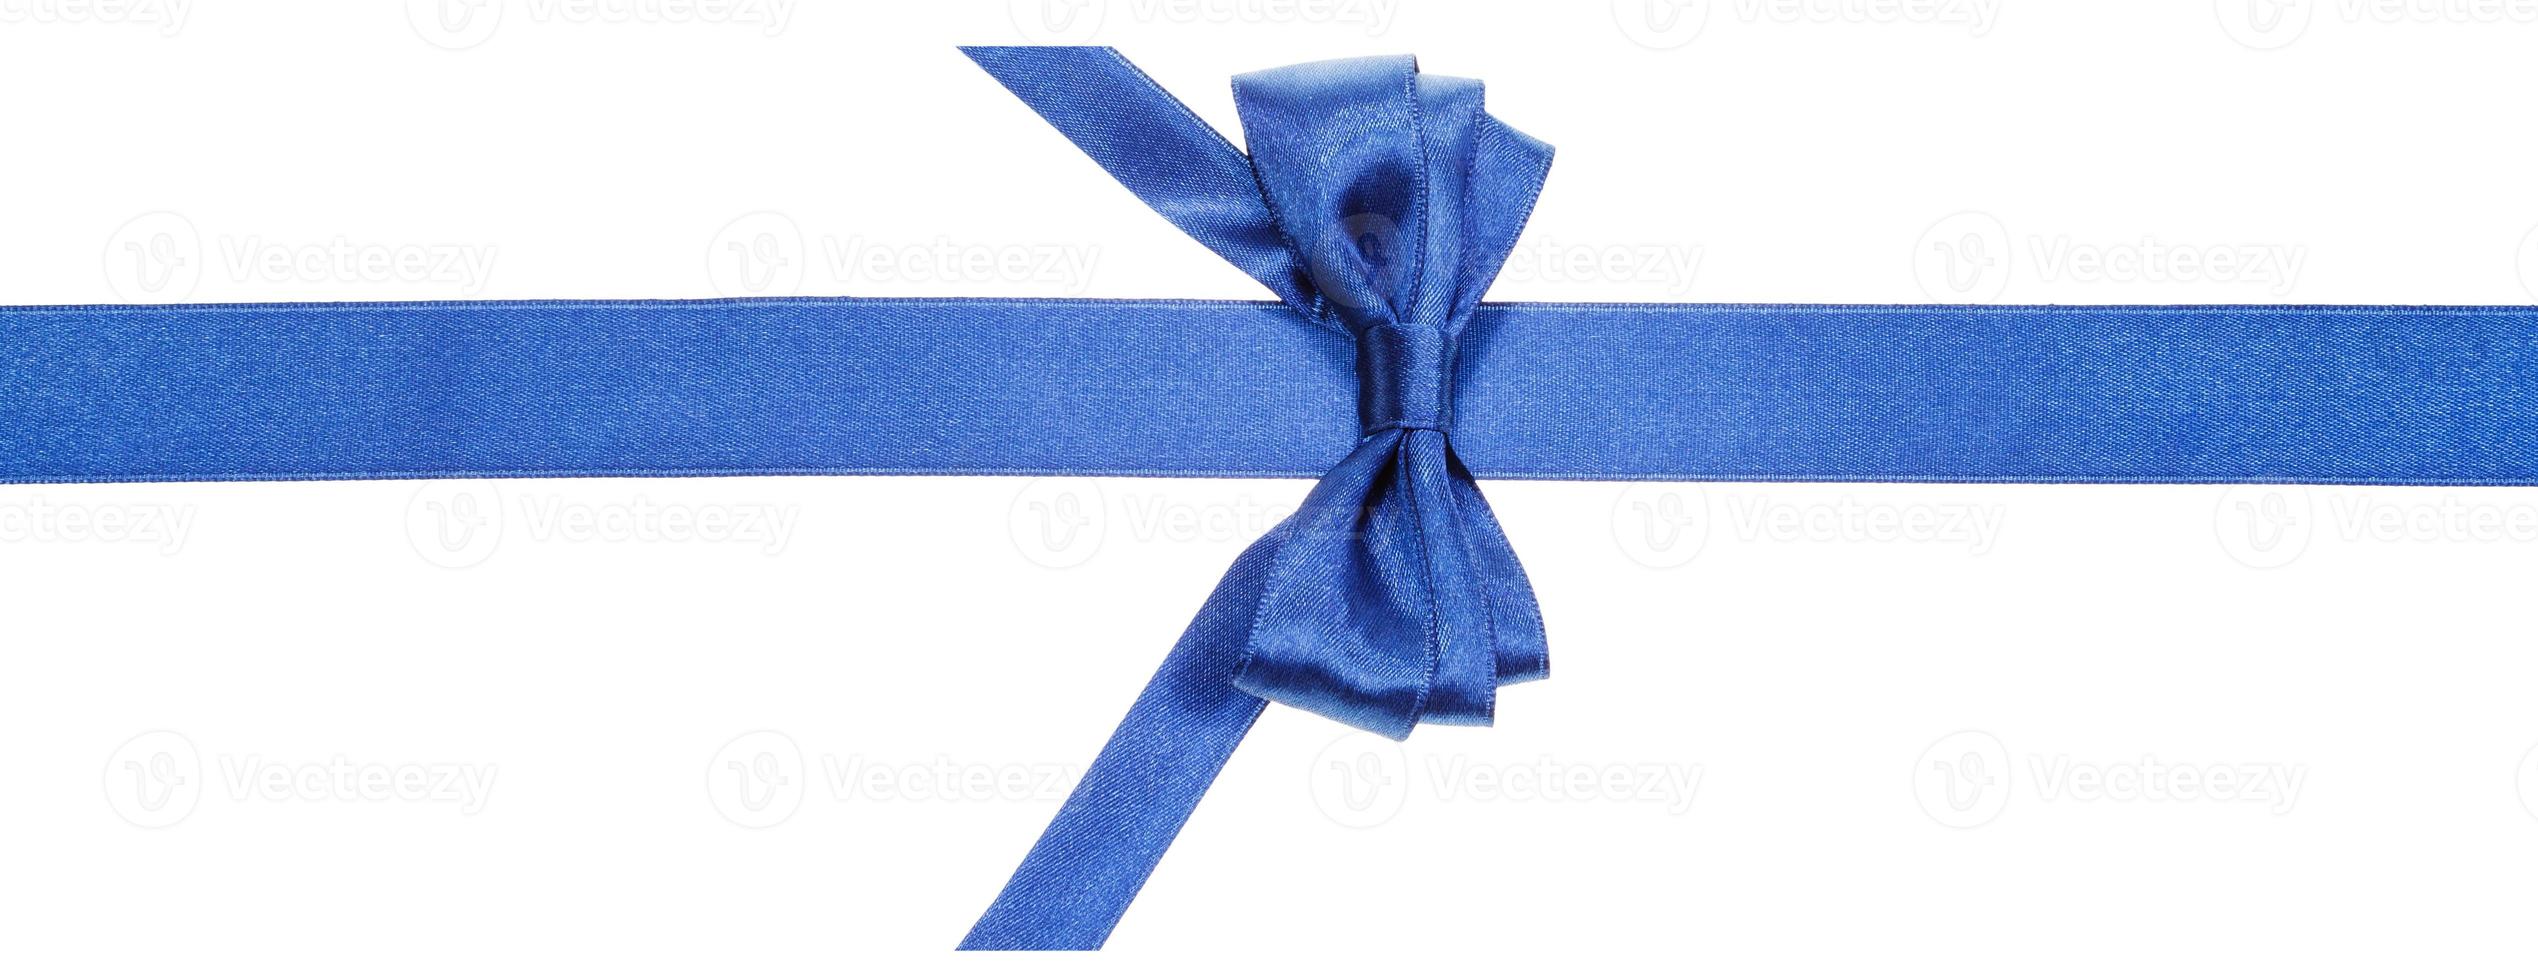 verklig blå rosett med vertikalt skära slutet på silke band foto